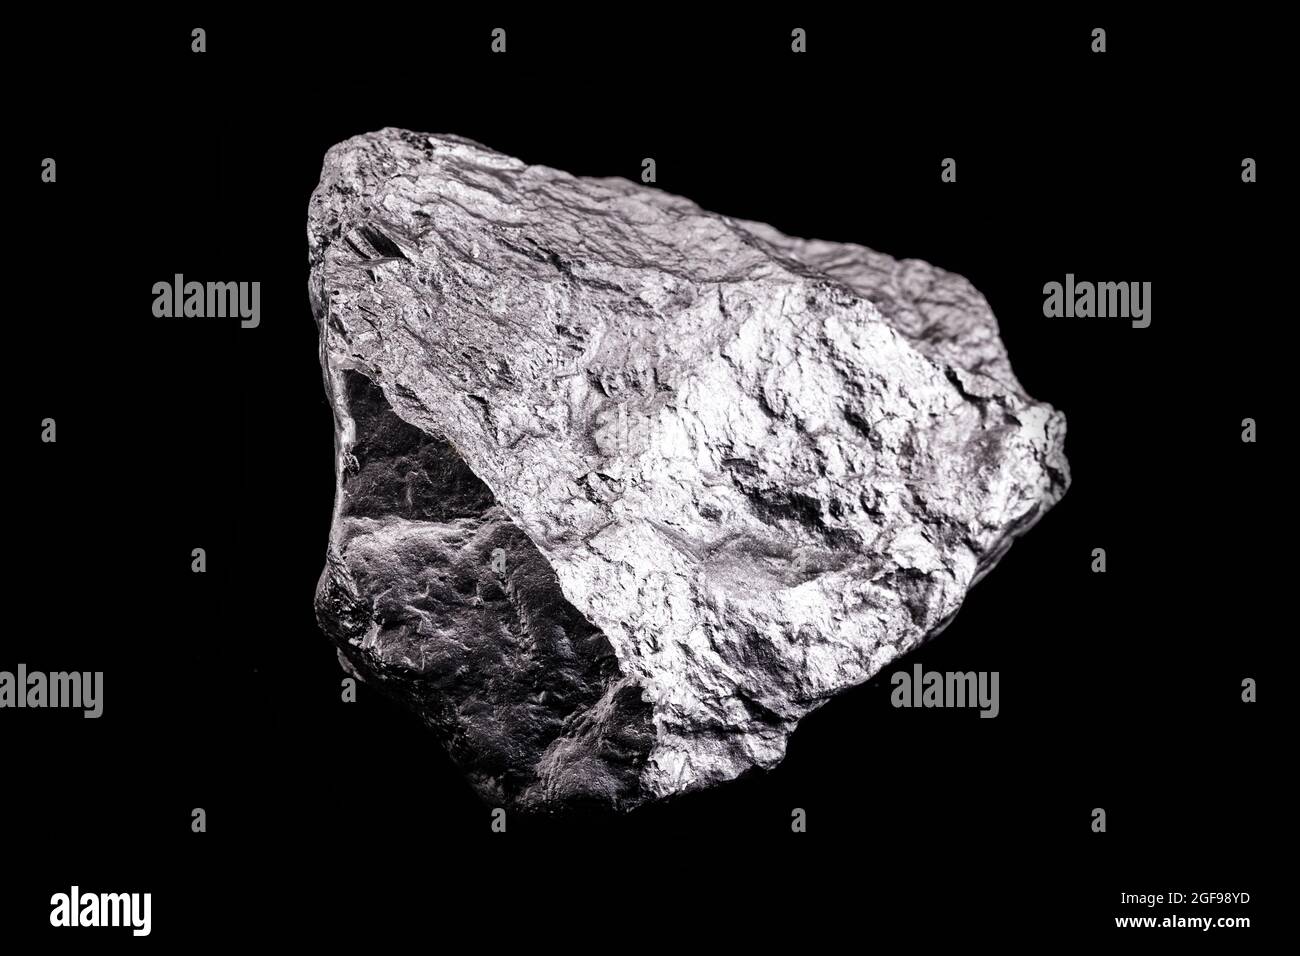 Cát kim loại mang lại cảm giác bề mặt thô ráp và độc đáo. Với hình ảnh của Bao da cát kim loại, bạn sẽ được trải nghiệm sự mạnh mẽ, tinh tế và lạ mắt của loại khoáng vật này. Hãy chiêm ngưỡng và khám phá những điều thú vị mà mỗi viên đá mang lại.